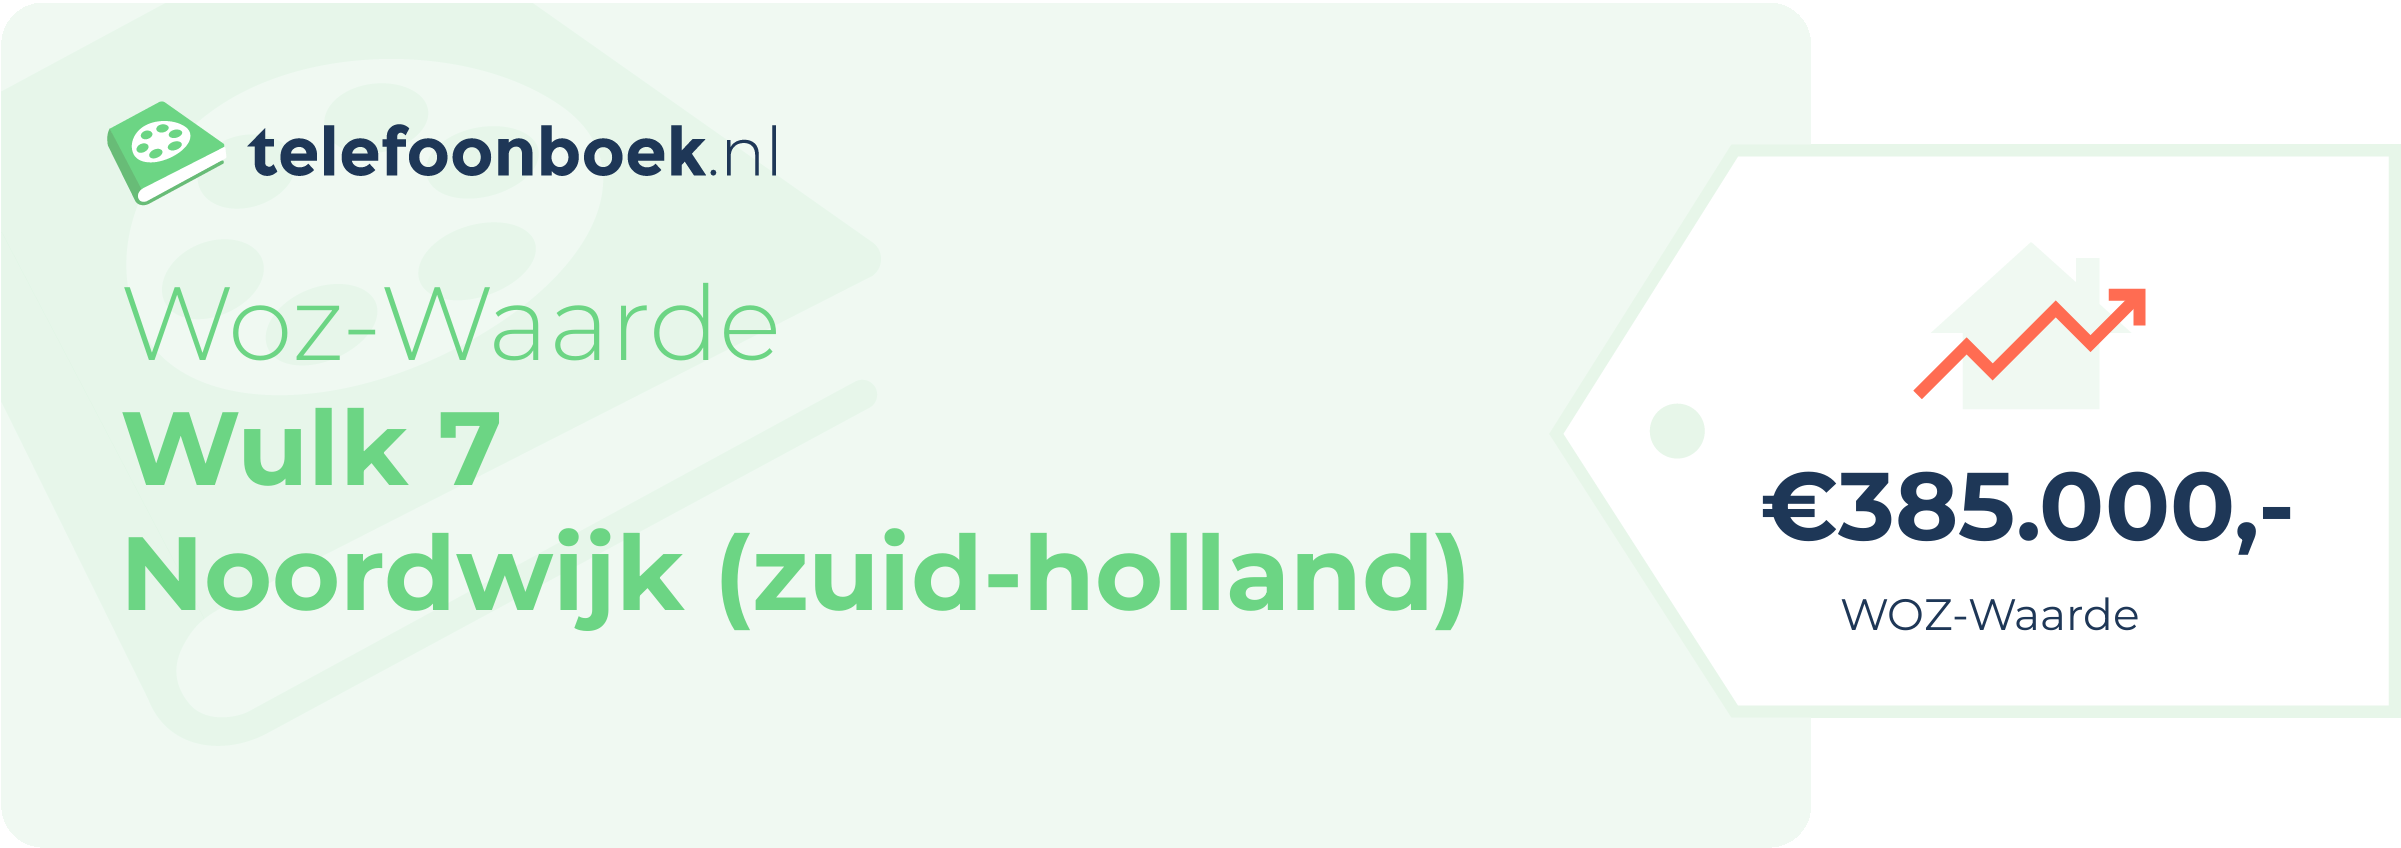 WOZ-waarde Wulk 7 Noordwijk (Zuid-Holland)